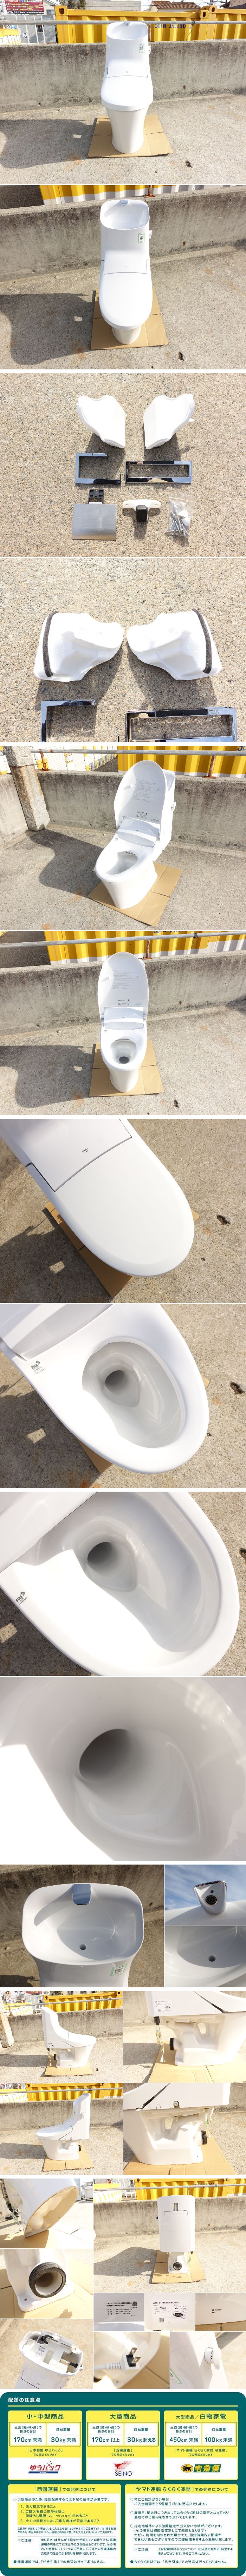 日本初売D▼LIXIL INAX トイレ ベーシア シャワートイレ 便器 タンク 便所 洋式 壁排水 電気便座 手洗いあり 2020年 DT-BA282P-6L (30221) 便座